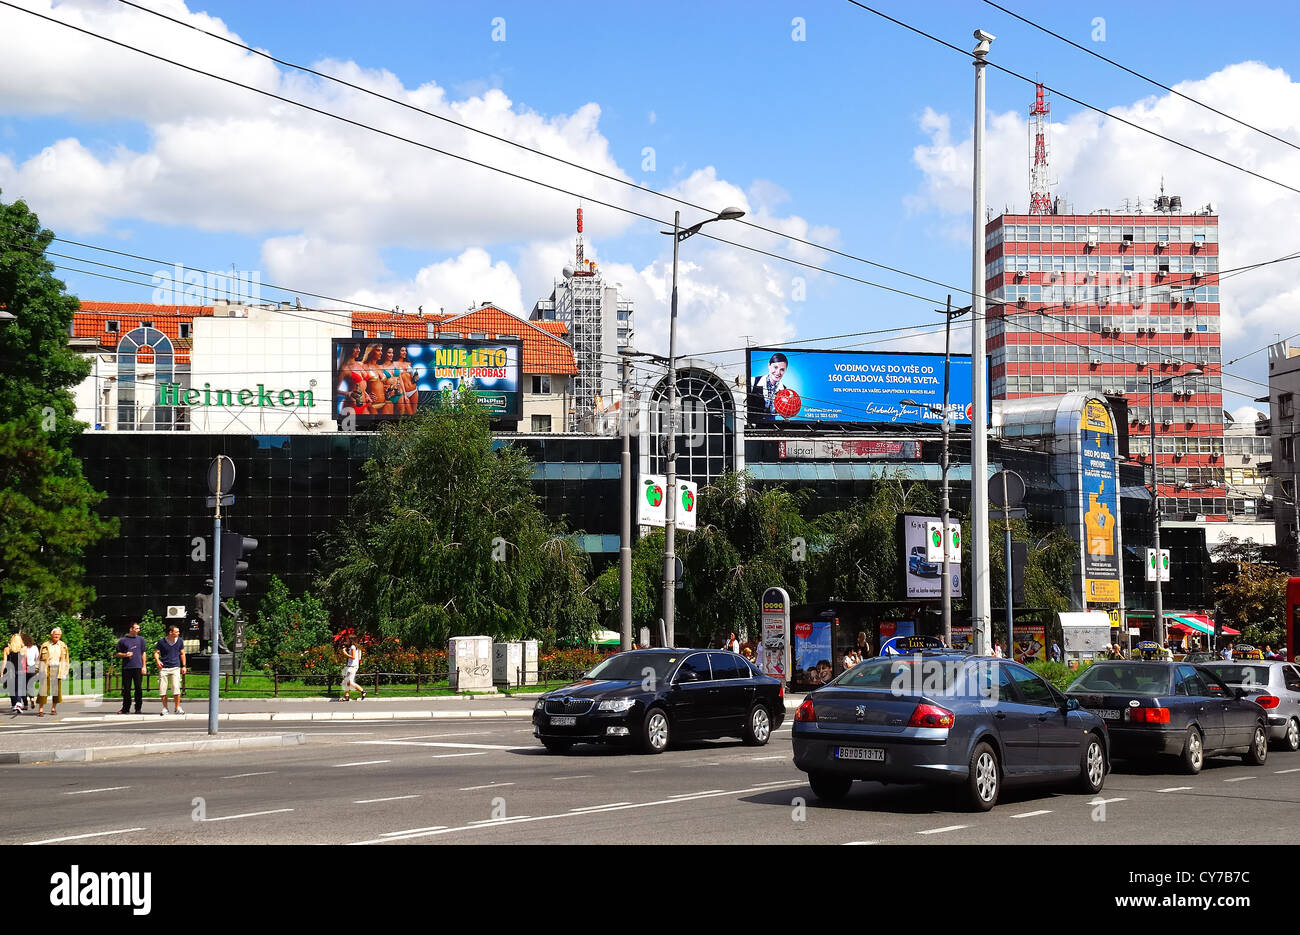 Belgrade, Serbia : the city traffic near Trg Republike (Republic Square). Stock Photo